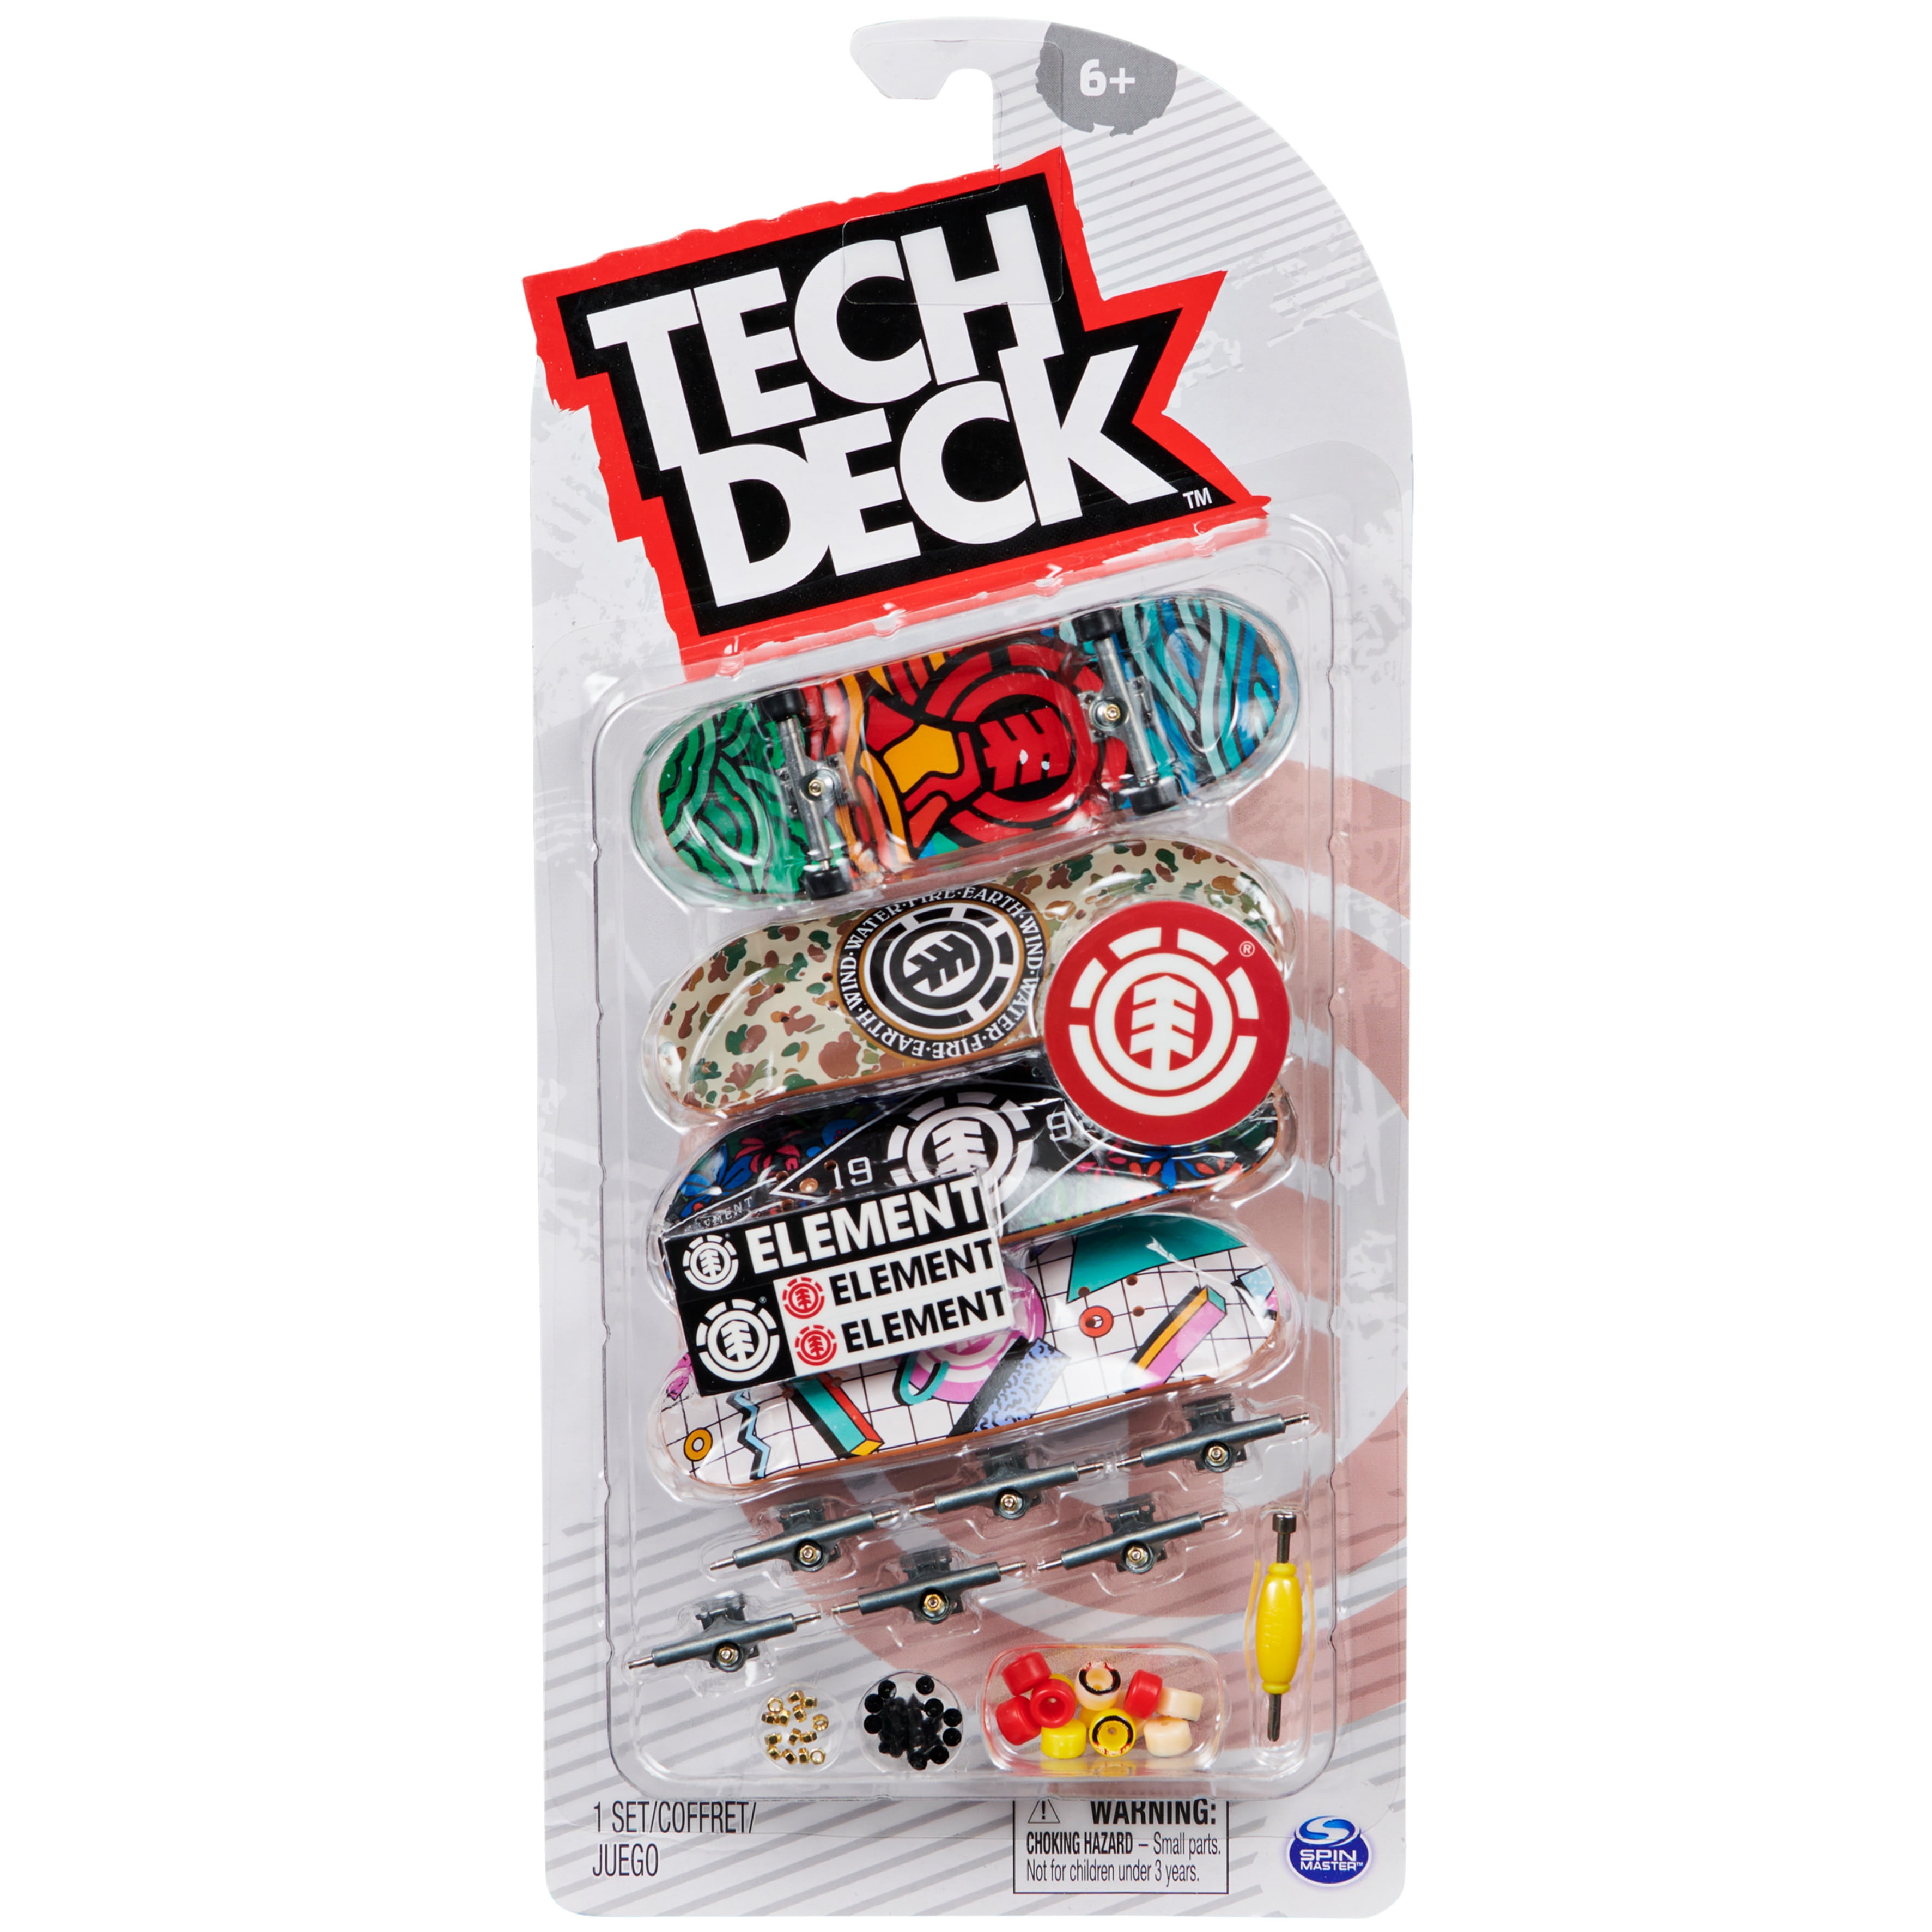 Tech Deck 96mm Blind Series 8 Set 20th Anniversary NEW Tech-Deck 